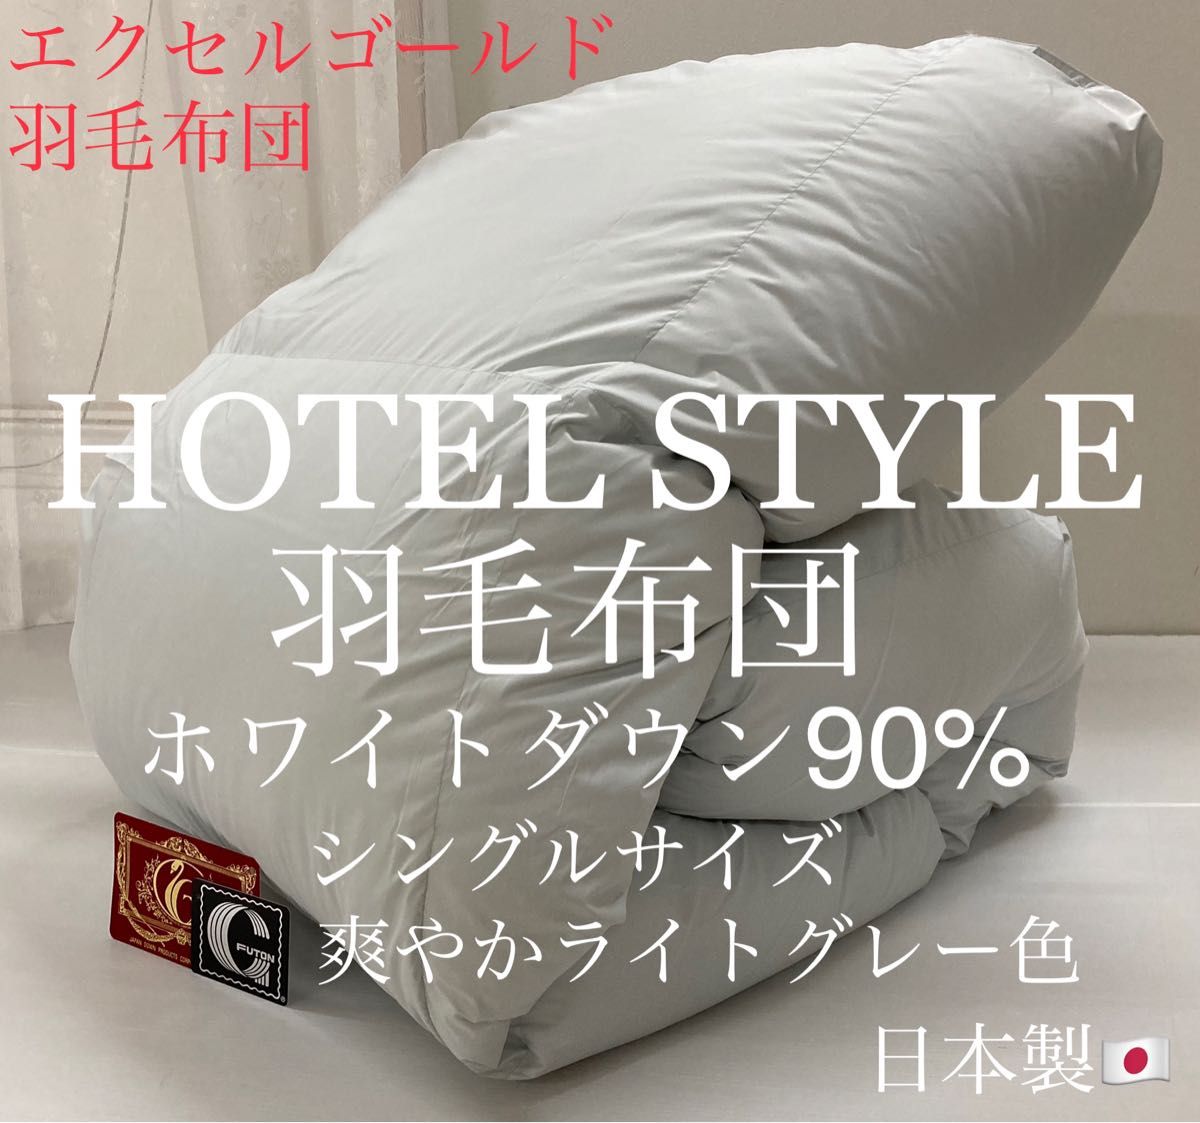 超高級ホテル仕様羽毛布団ホワイトダックダウン90% エクセルゴールド 